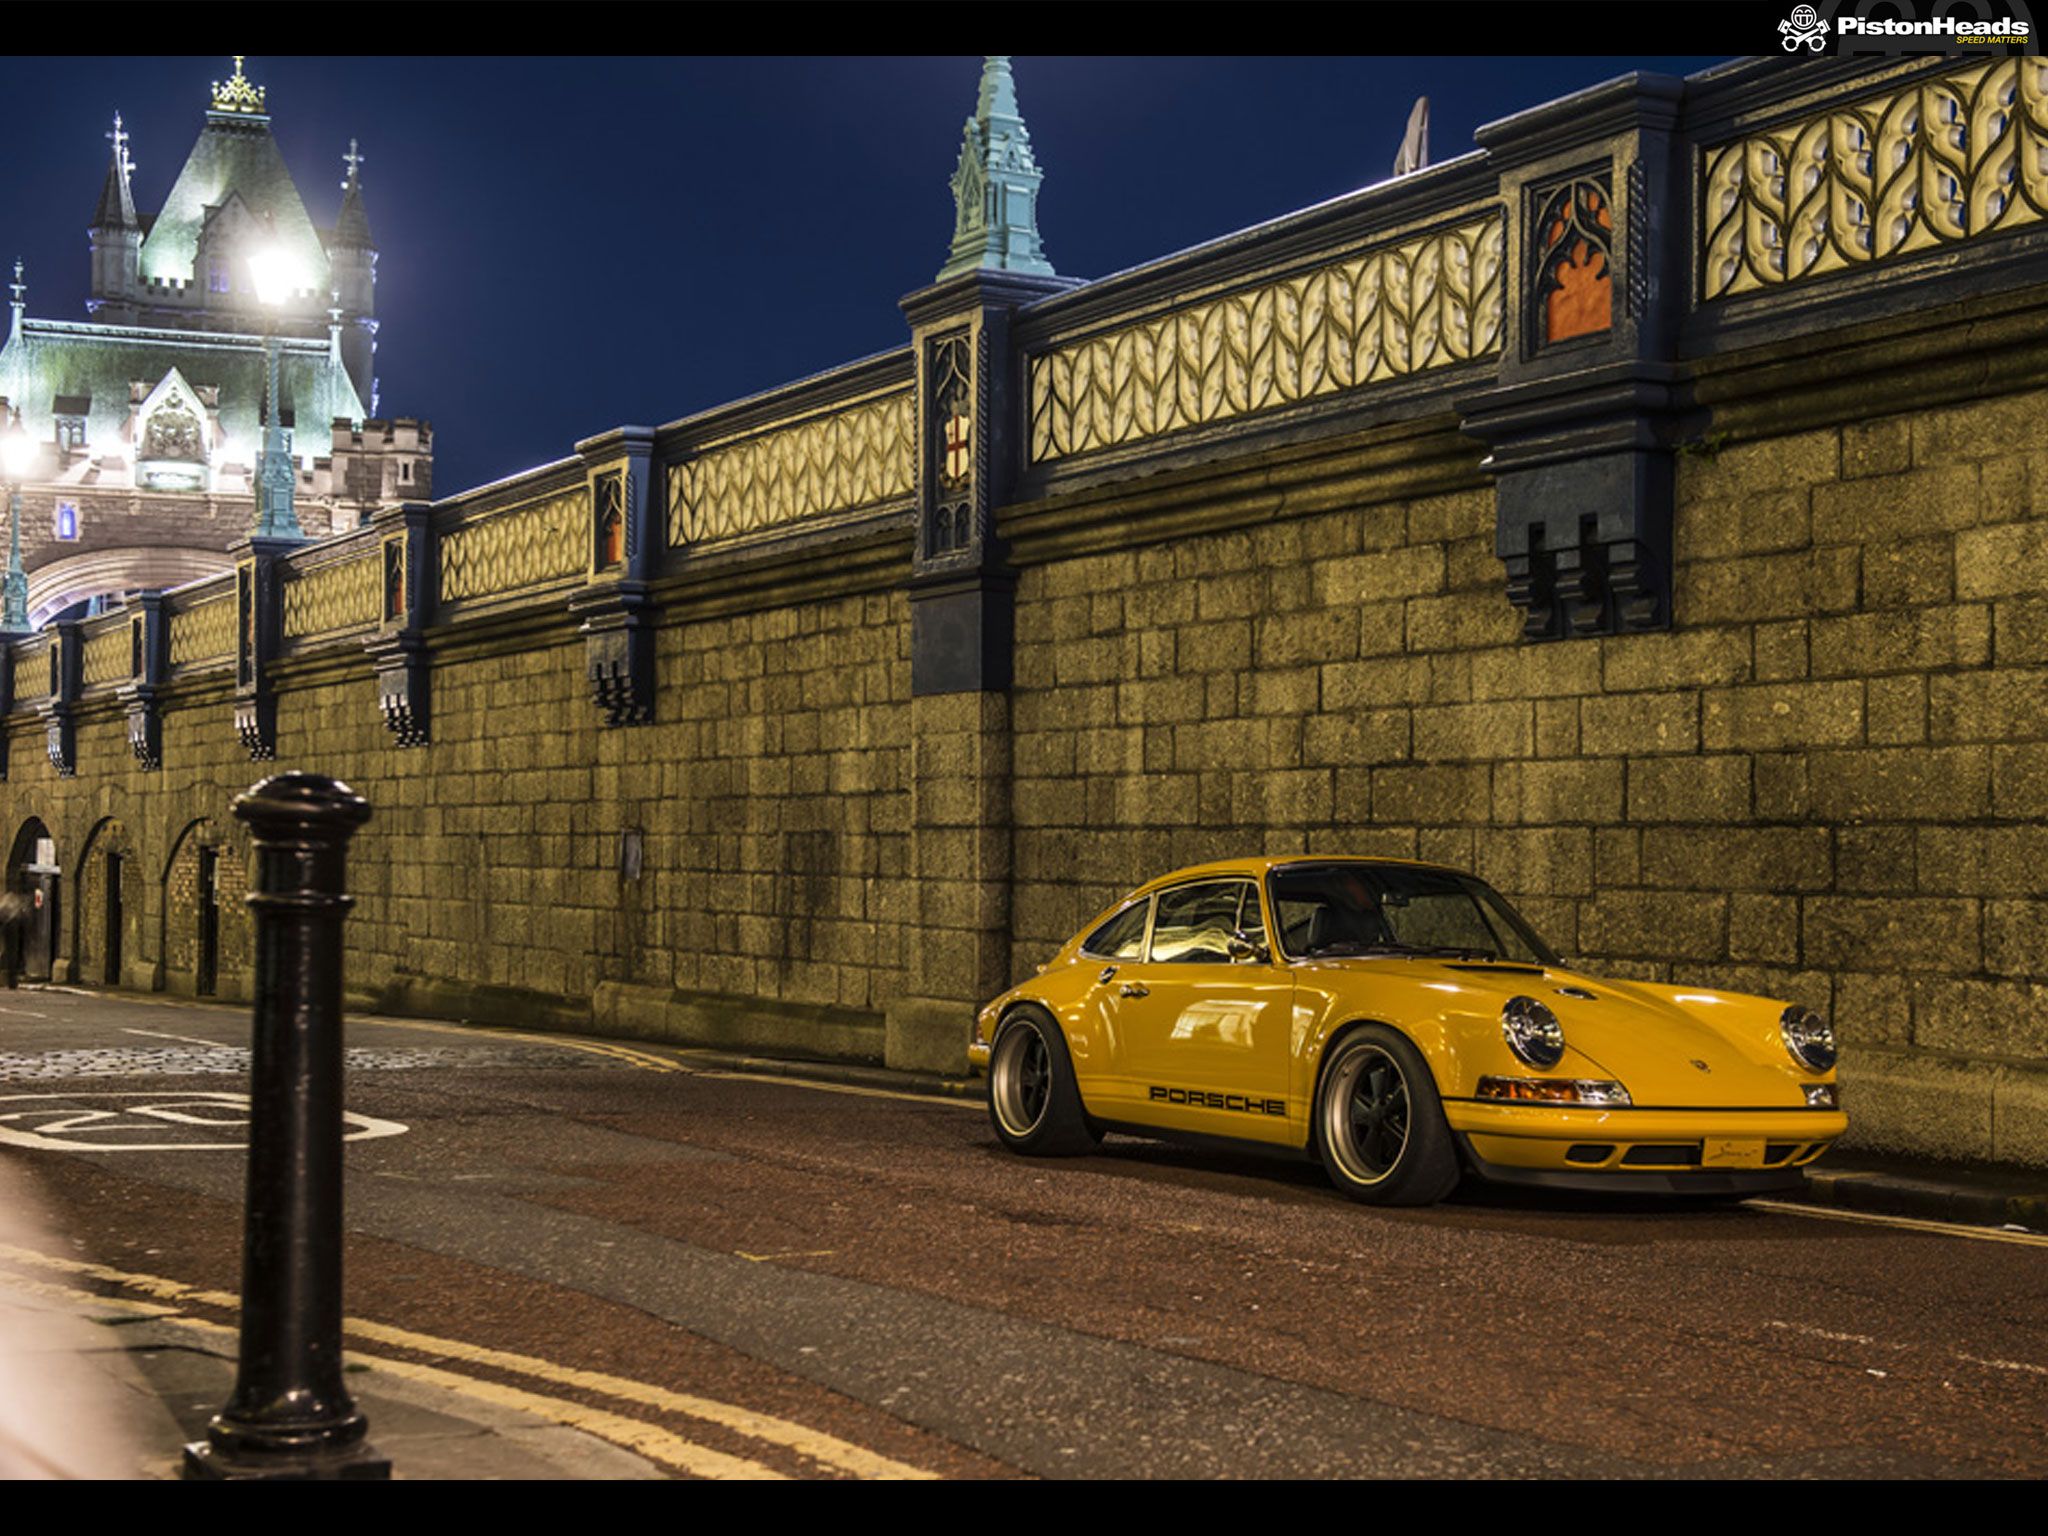 Porsche 911 Singer London - HD Wallpaper 